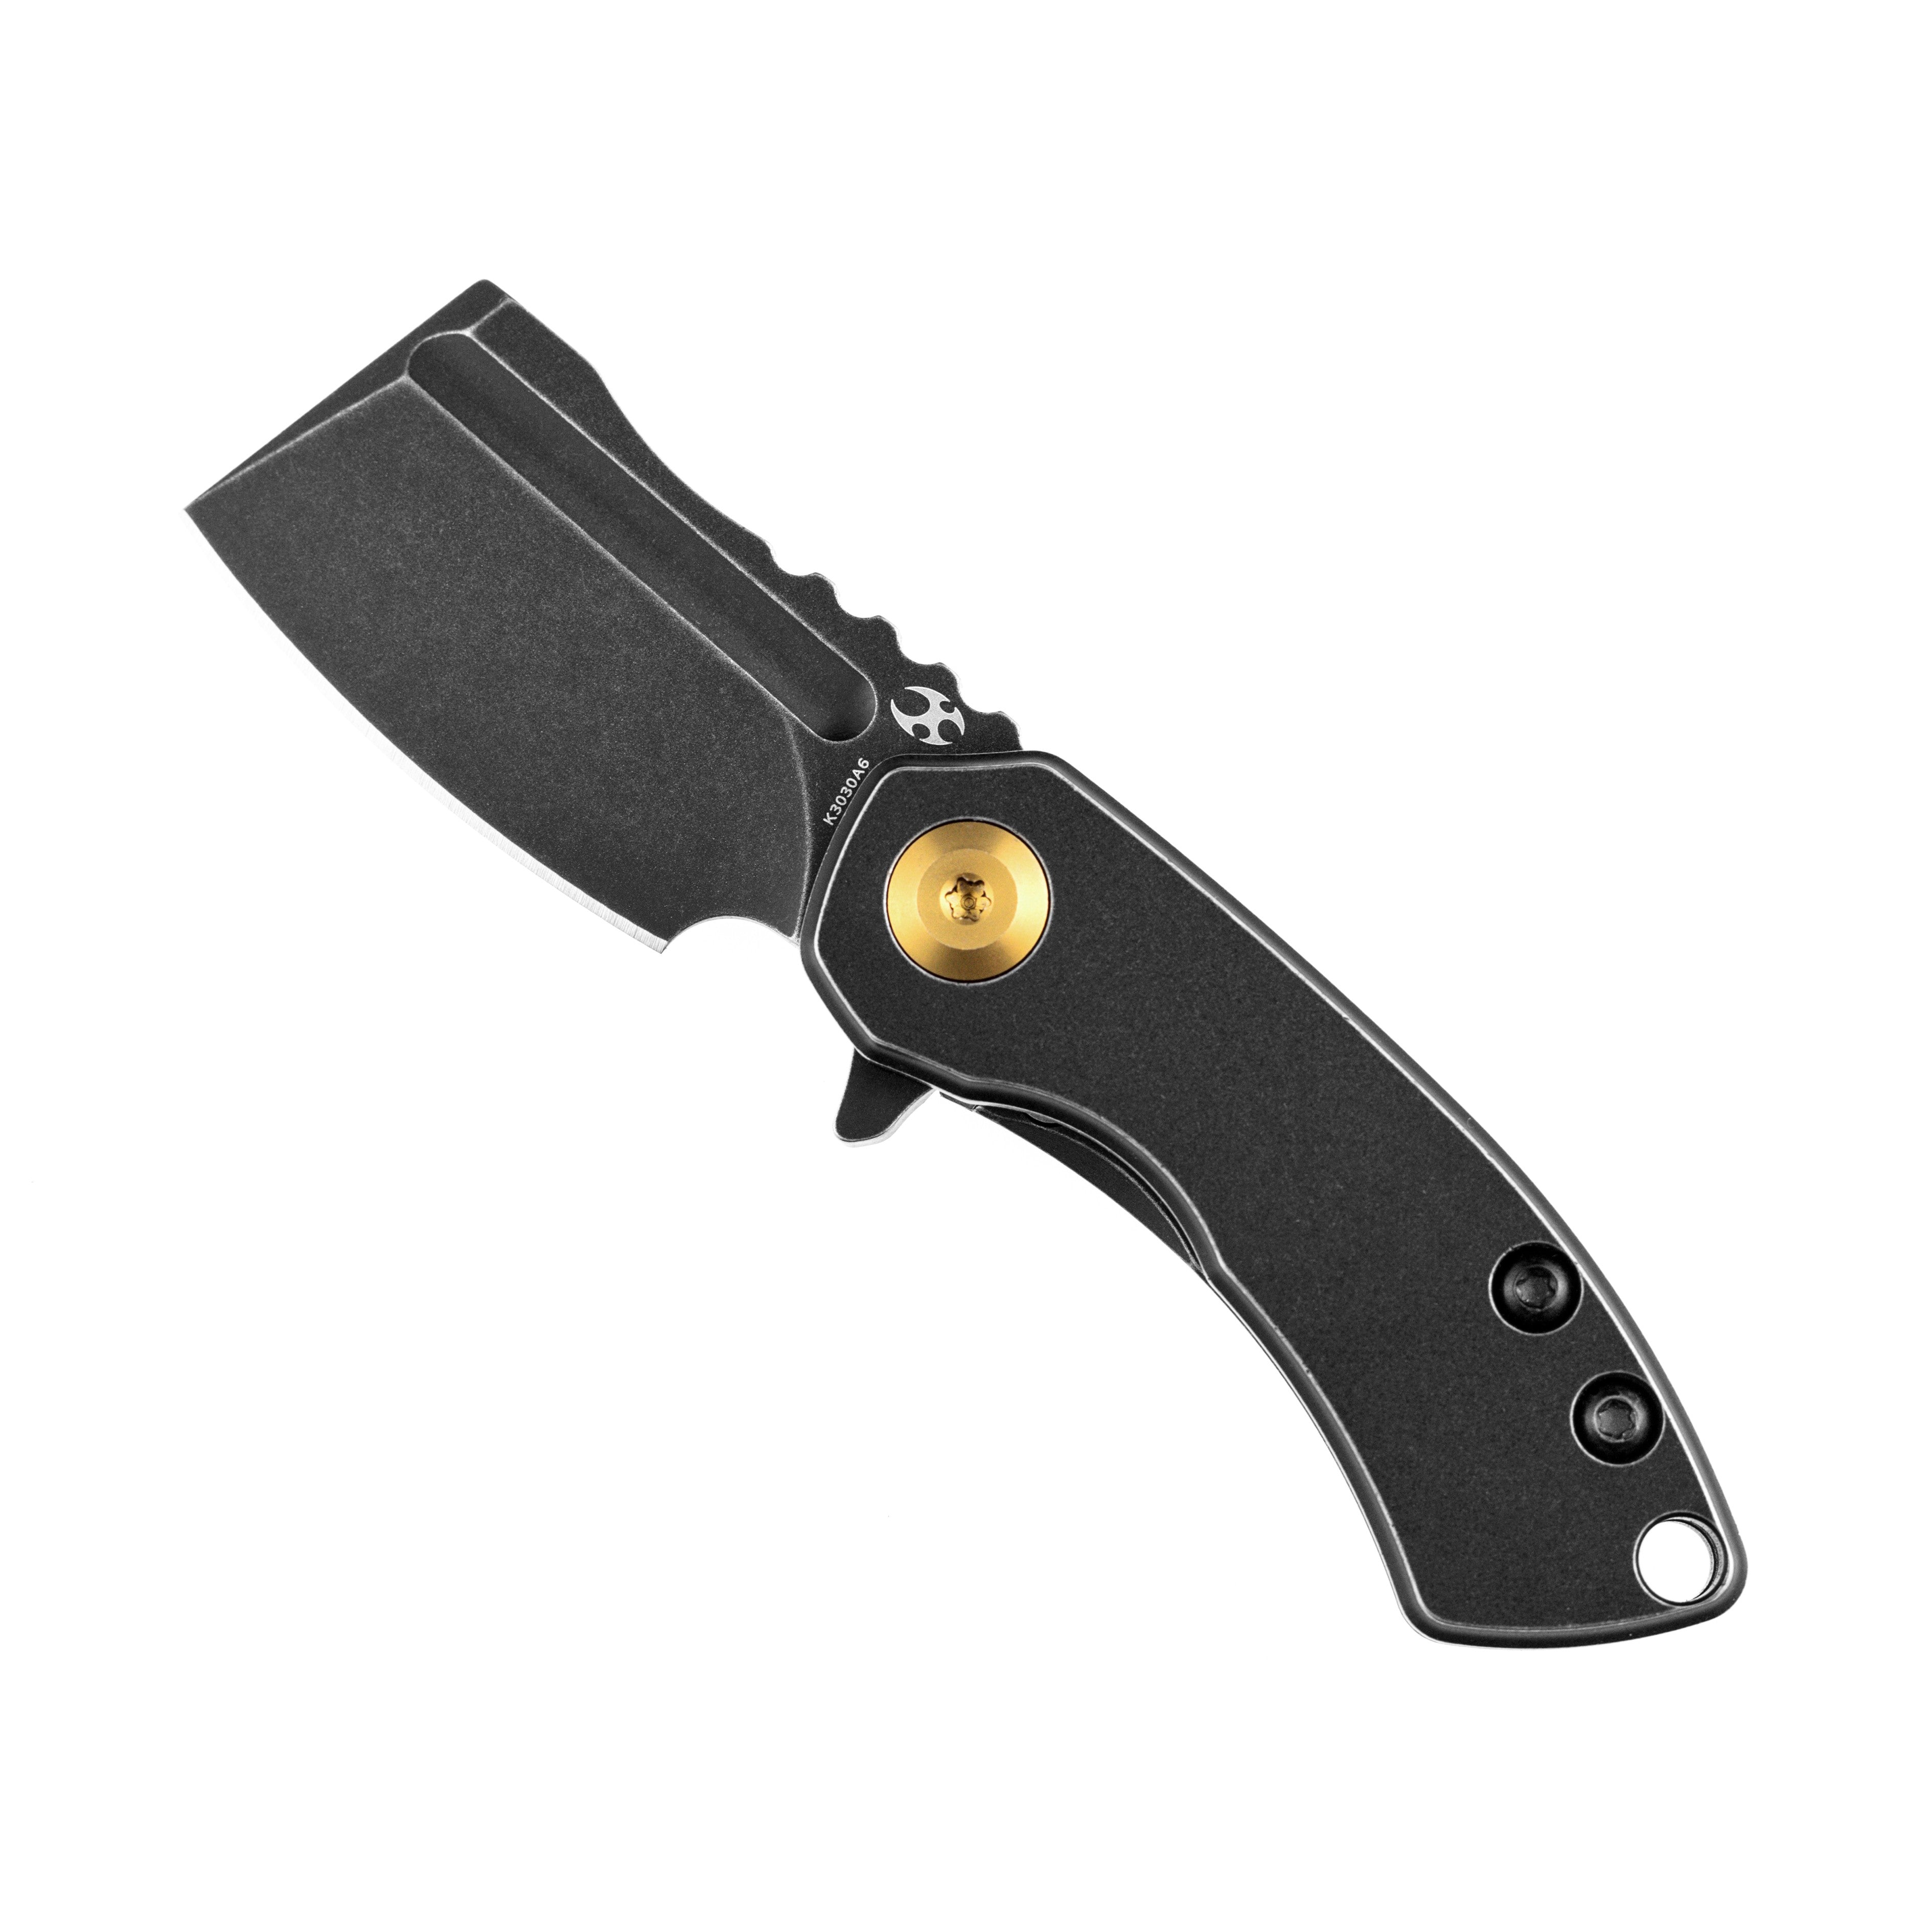 Kansept 刀具 Mini Korvid K3030A6 黑色 S35VN 刀片黑色钛手柄框架锁